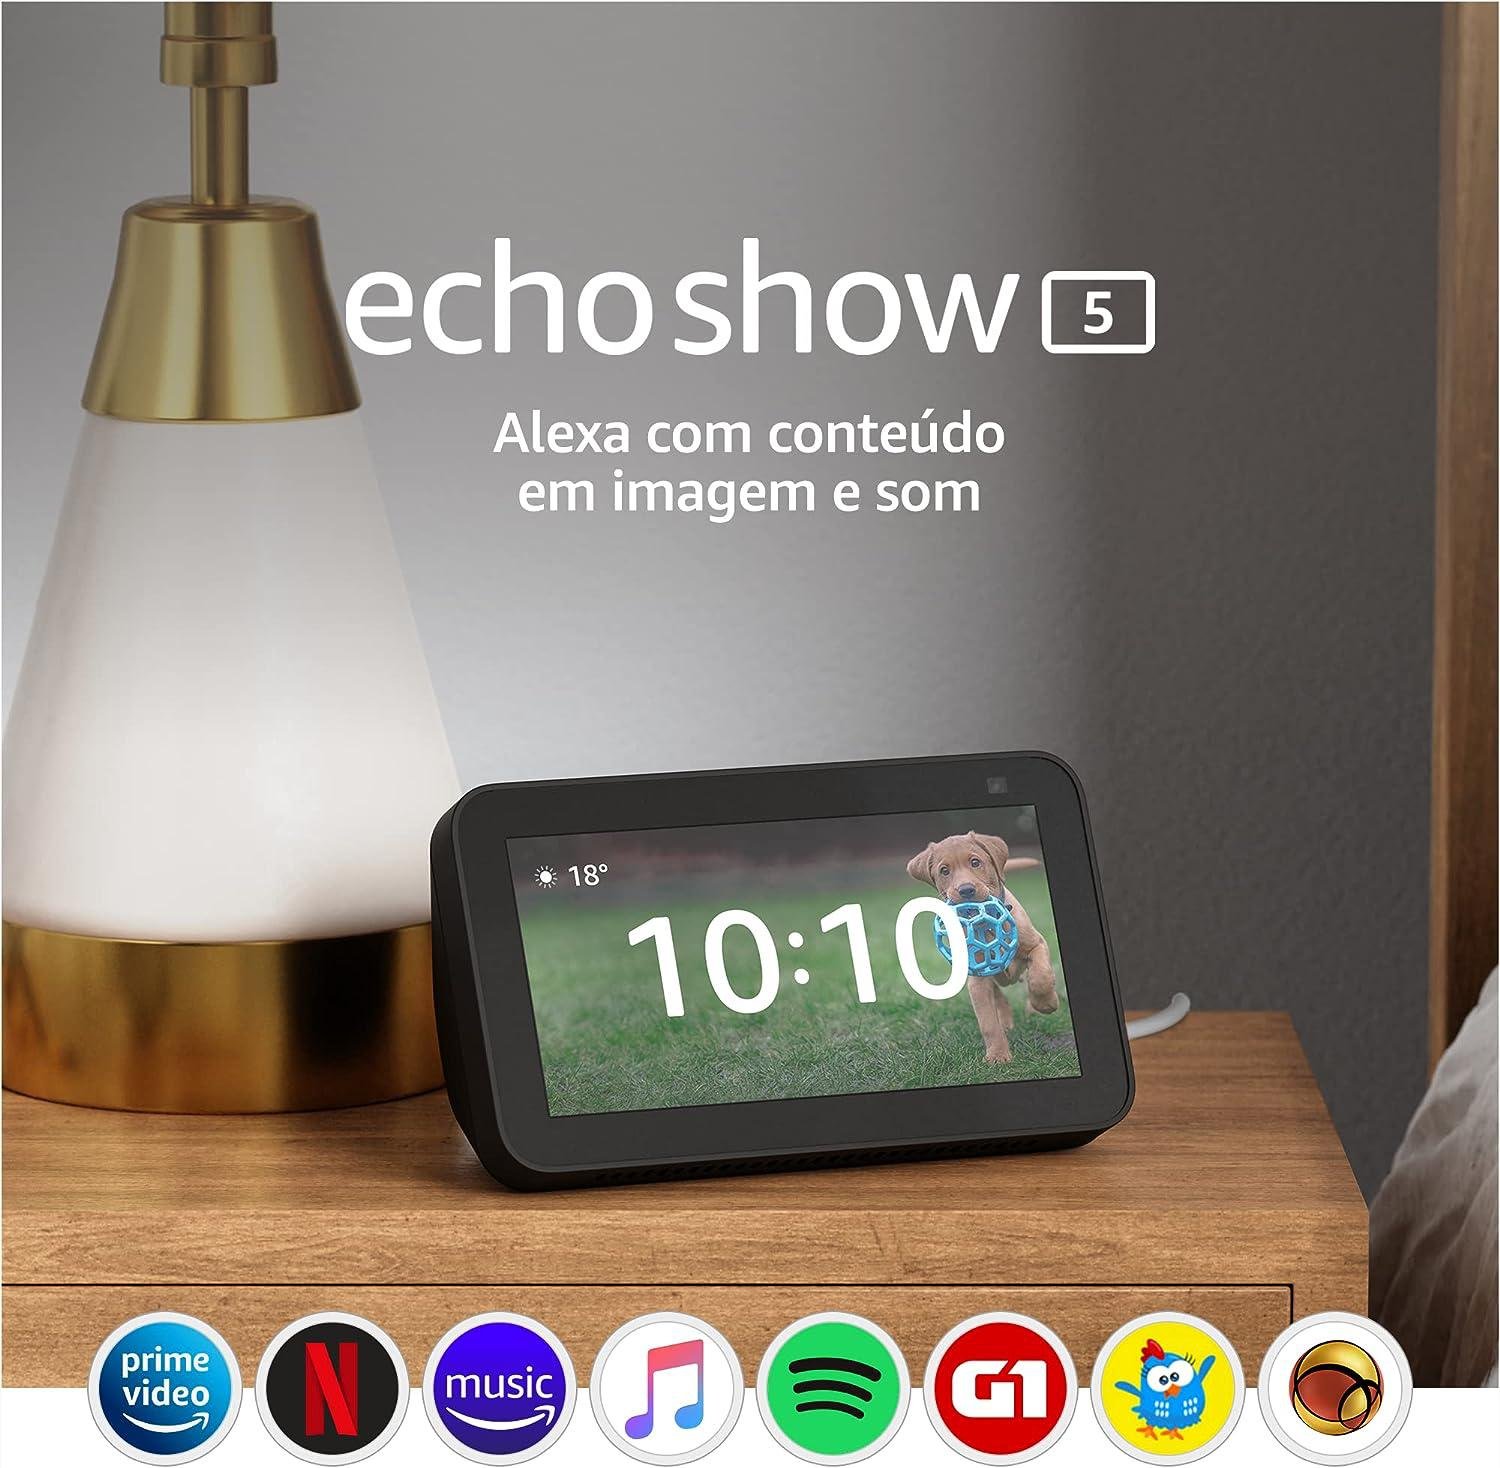 O Echo Show 5 reproduz vídeos, séries, filmes e trailers do Prime Vídeo, Youtube, Netflix e mais.